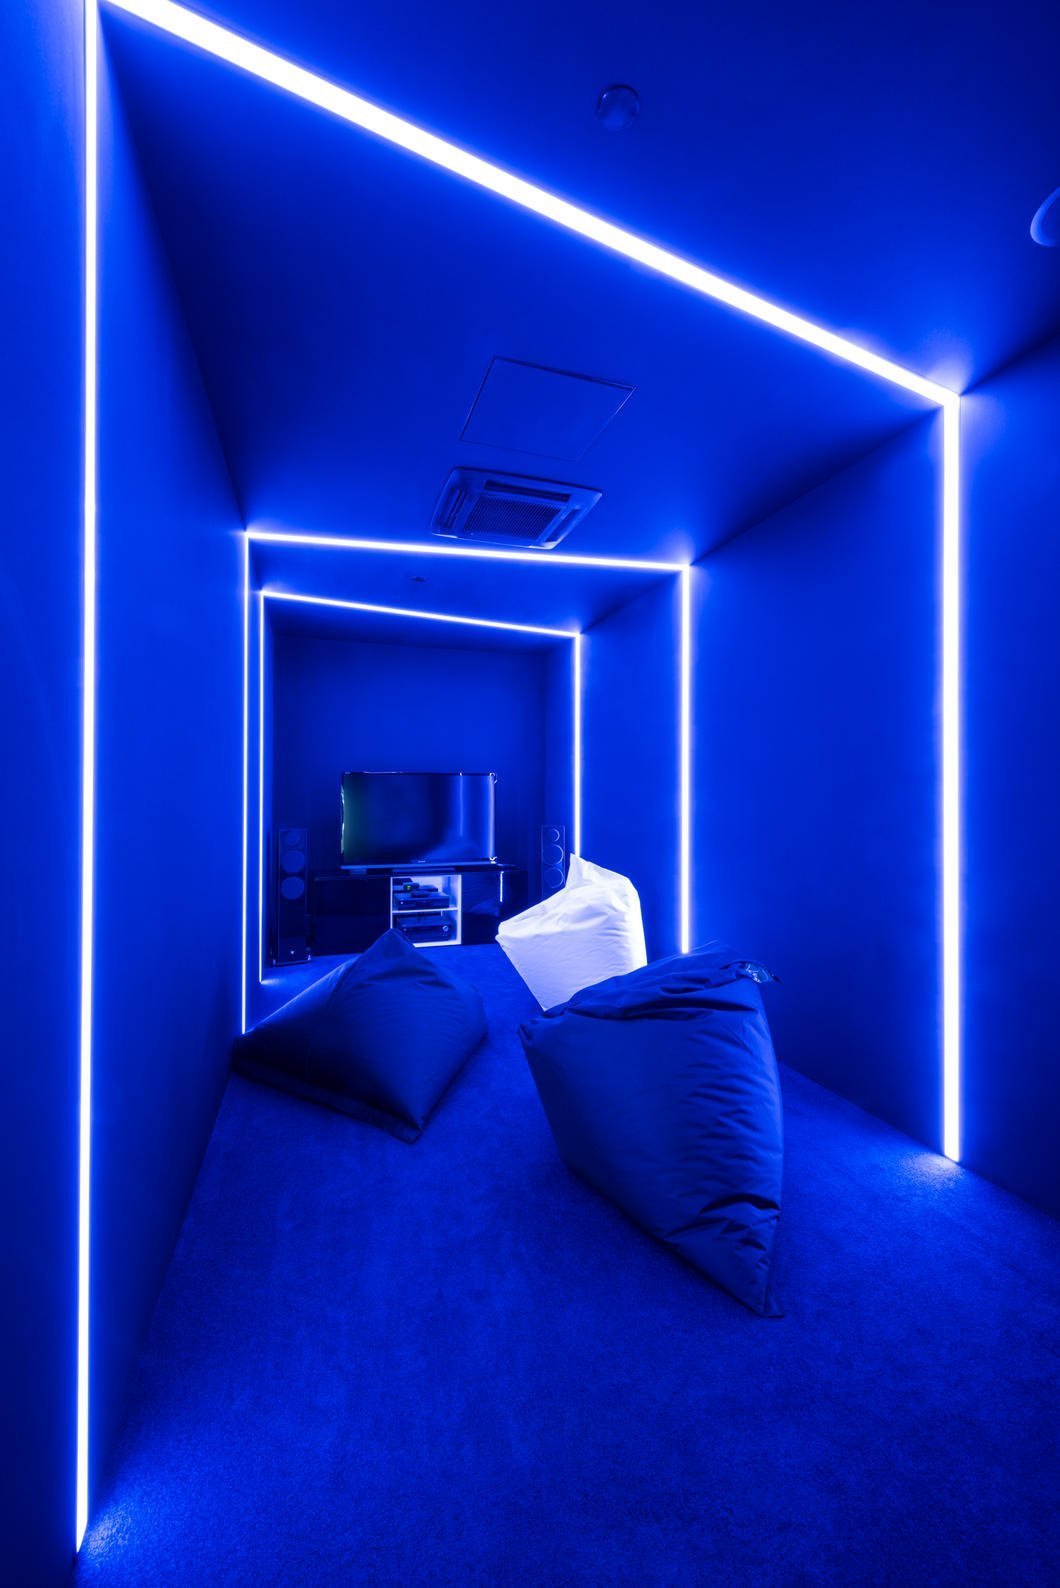 Источник света в комнате. Комната с подсветкой. Синяя подсветка для комнаты. Комната со светодиодами. Светодиодная подсветка.